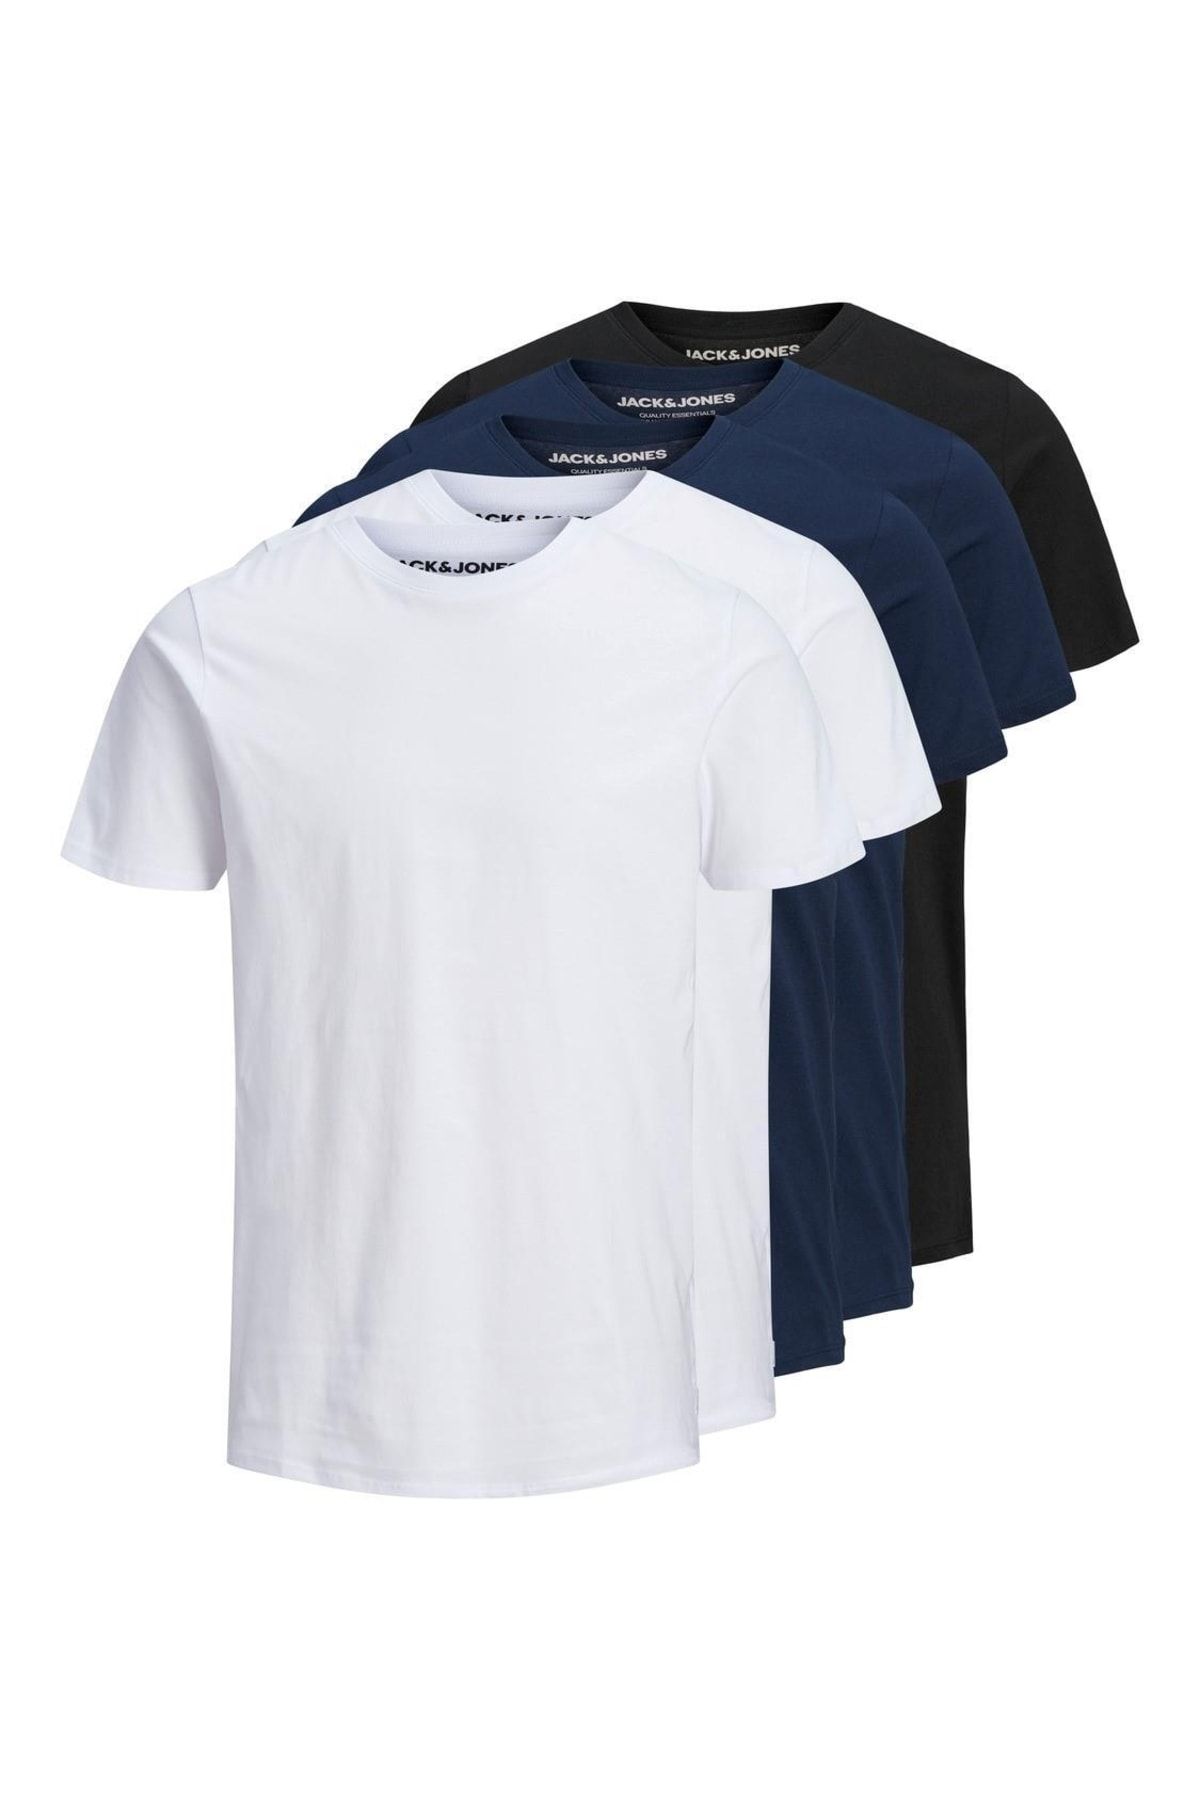 Jack & Jones Erkek 5'li Basic T-shirt - 12191190